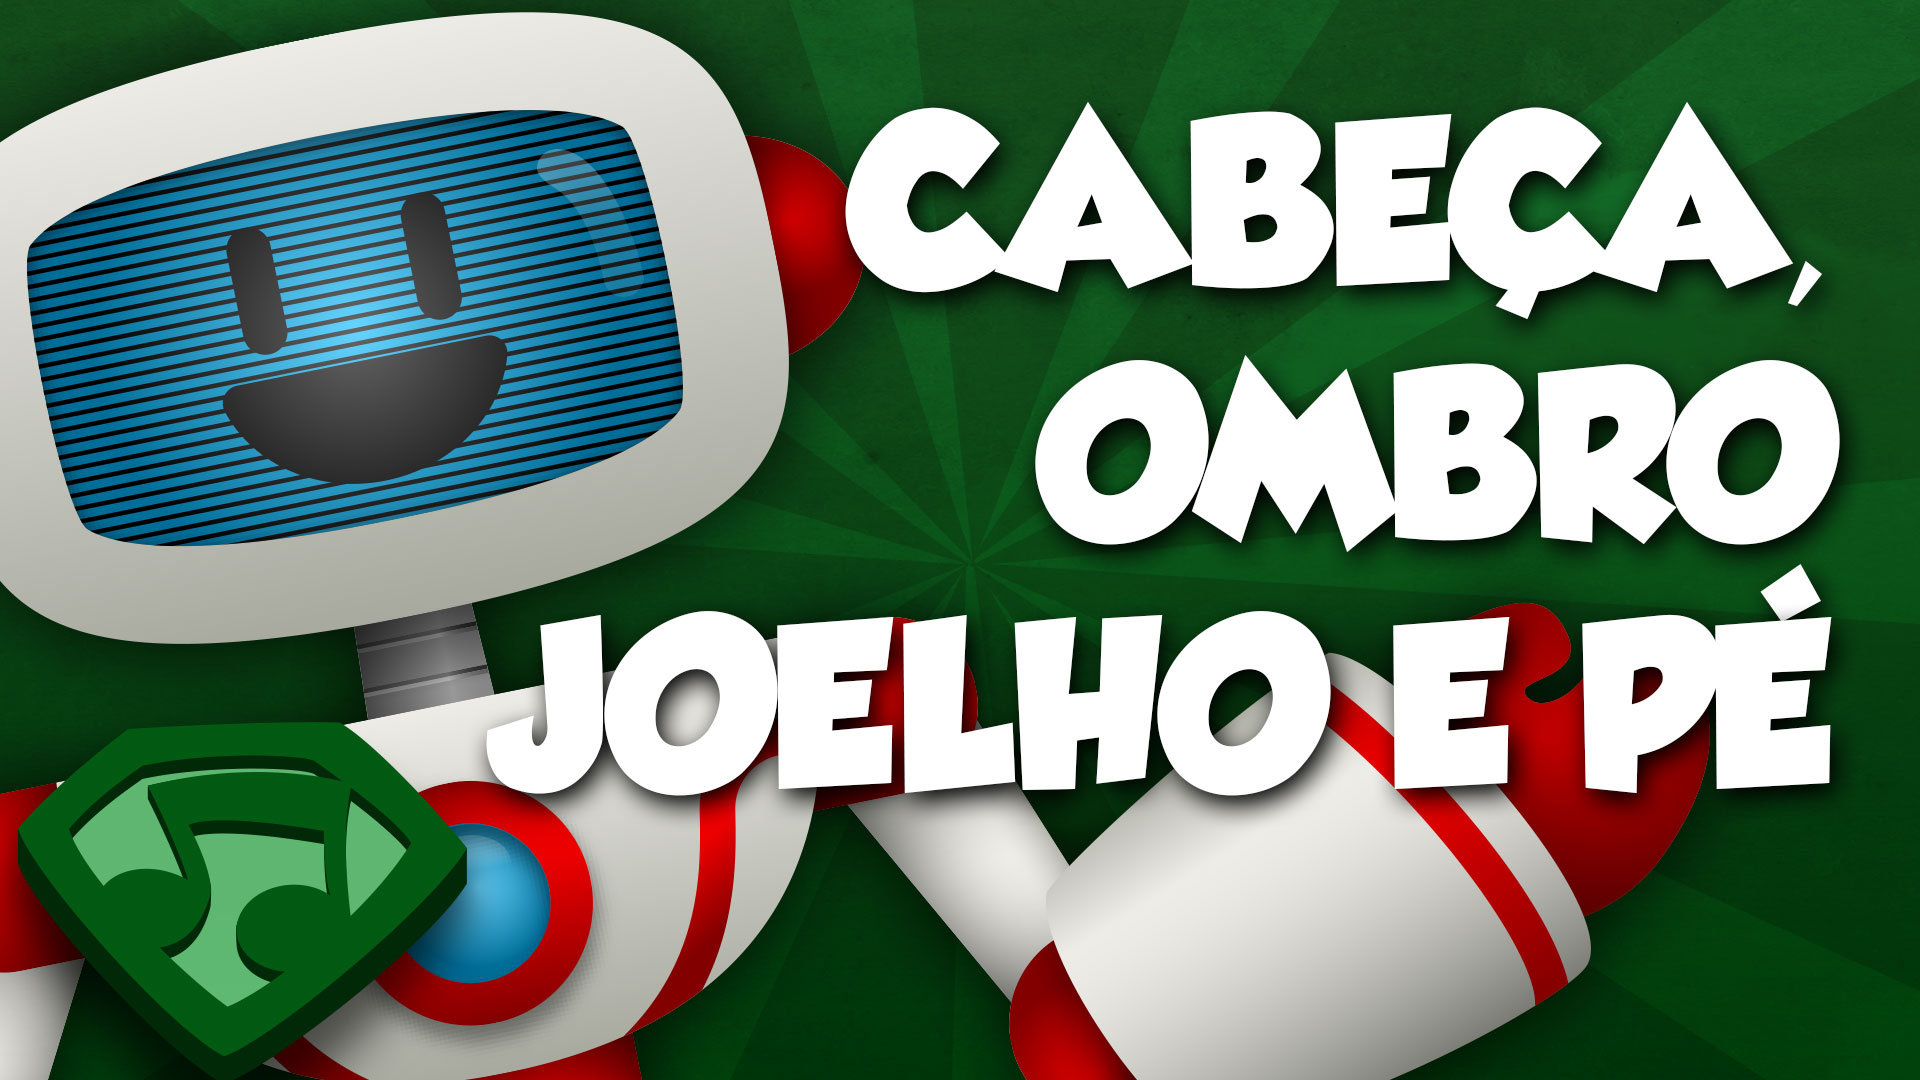 Miniatura do vídeo Cabeça, Ombro, Joelho e Pé. Clique para assistir o vídeo.